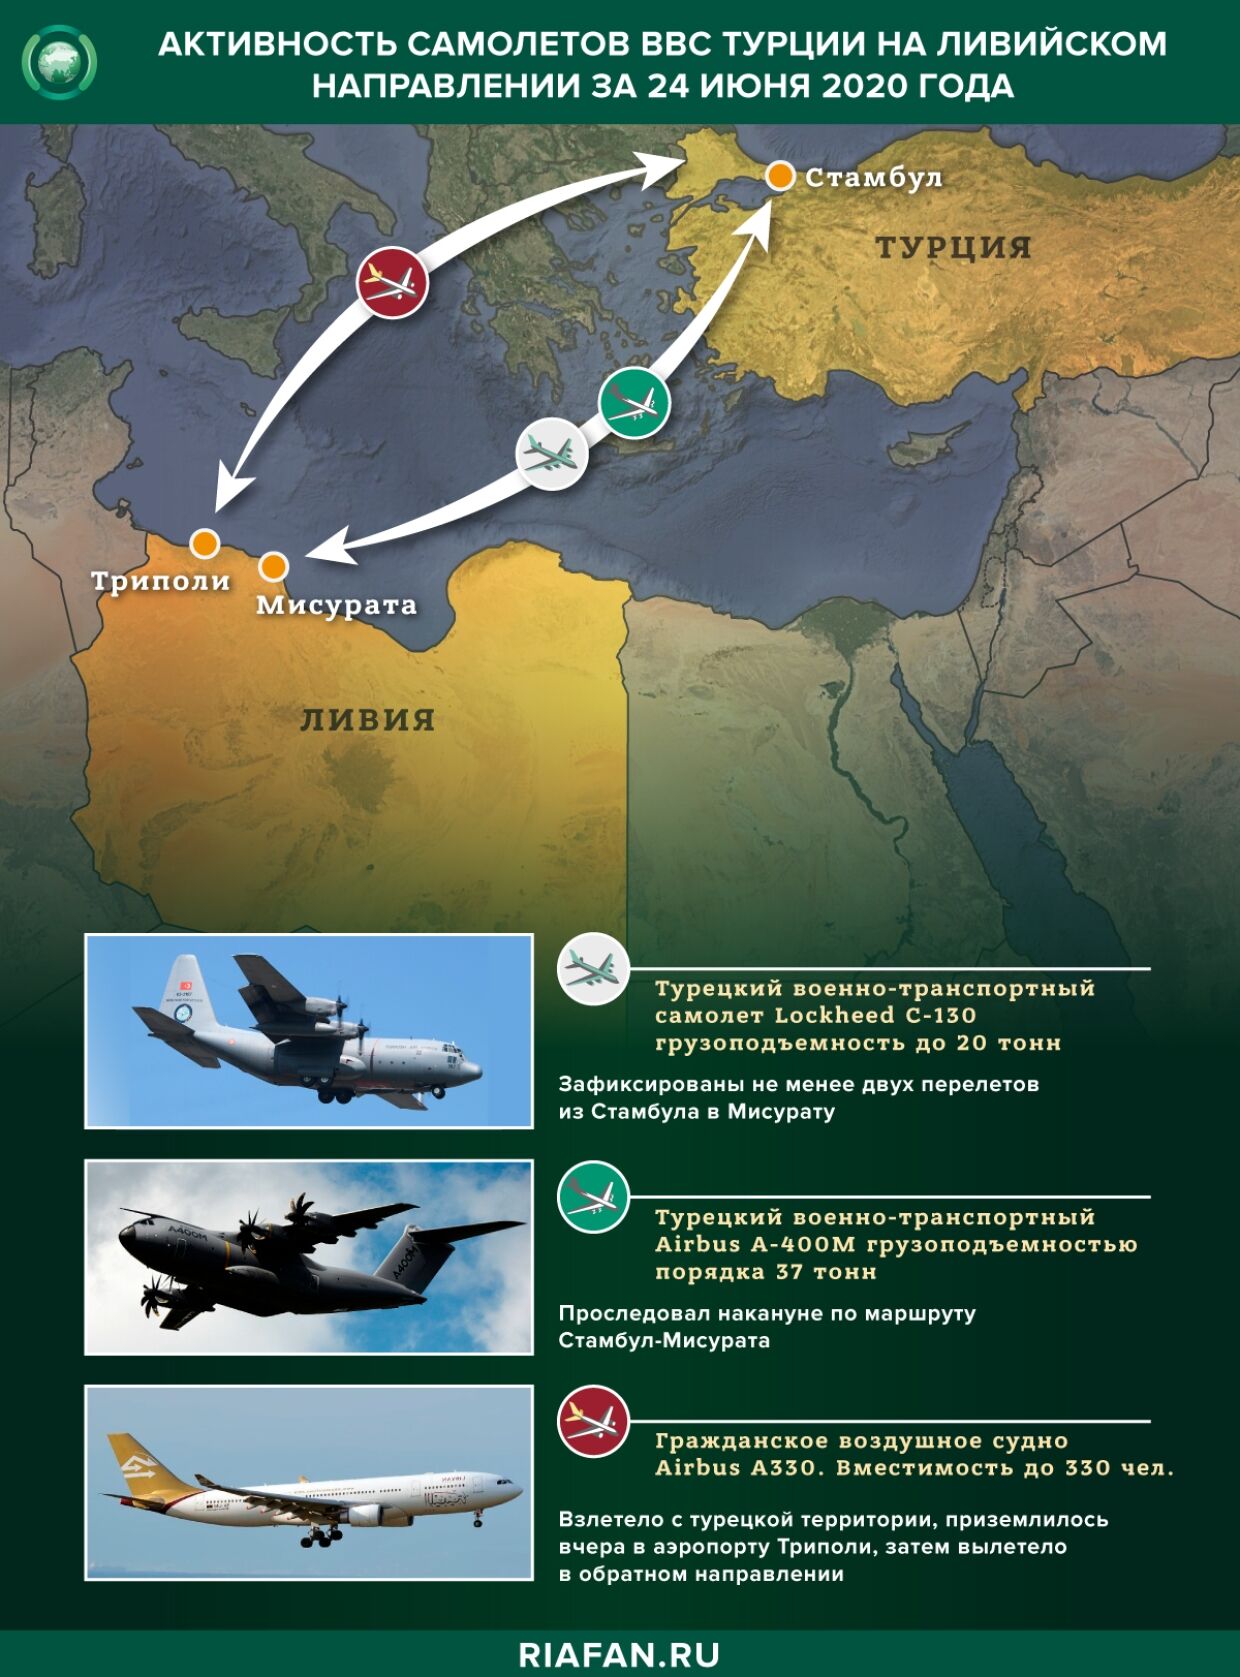 Как замена кораблей на самолеты отразилась на турецкой контрабанде для ПНС Ливии